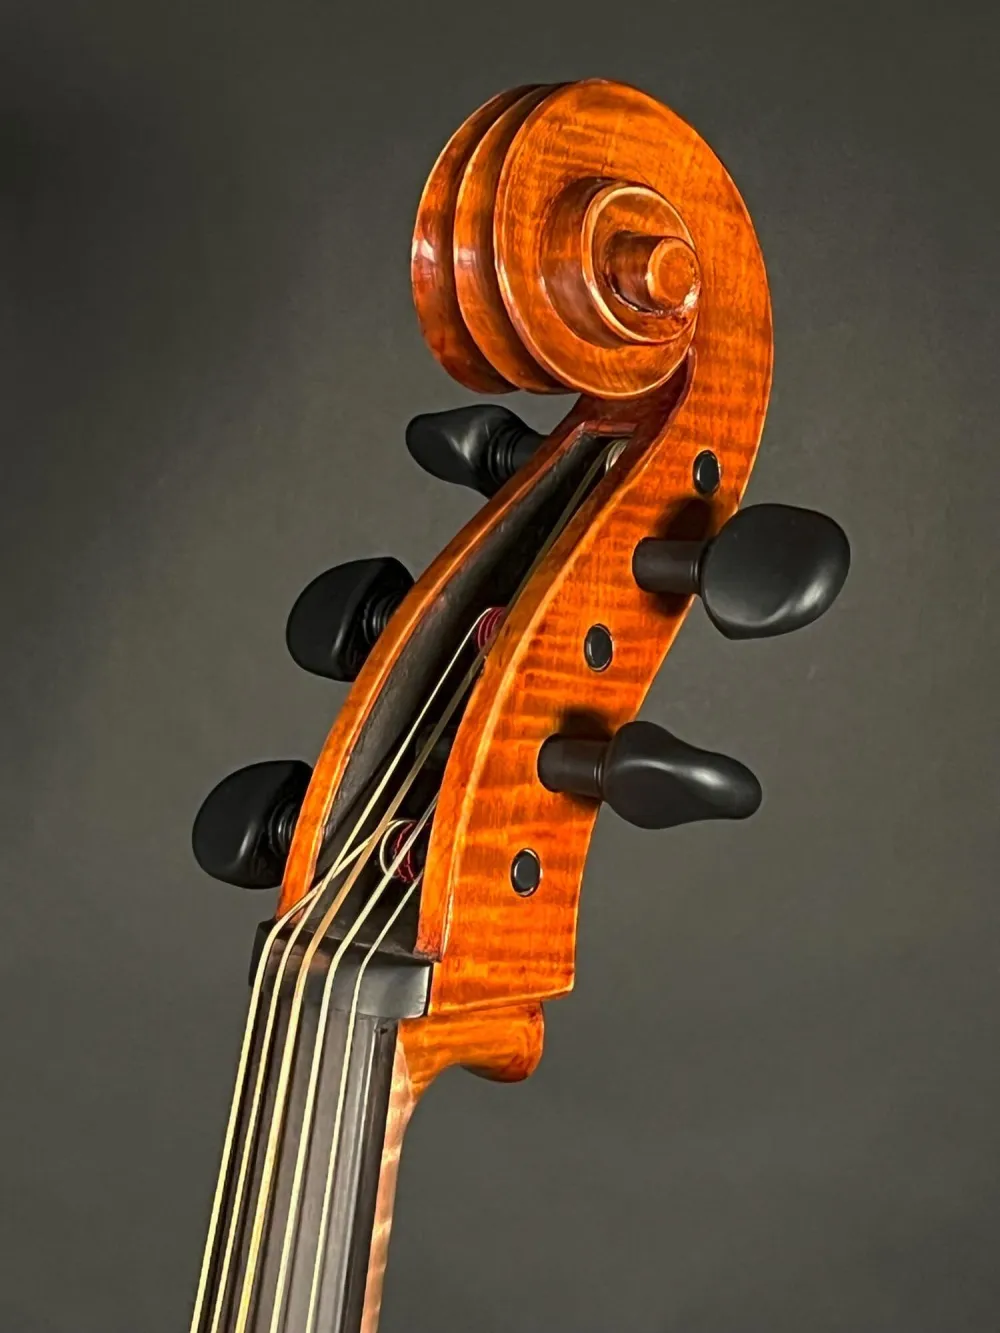 Schnecke- von der Seite oben -Detailansicht eines Reghino 5Saiter Cello Piccolo Handarbeit 2021